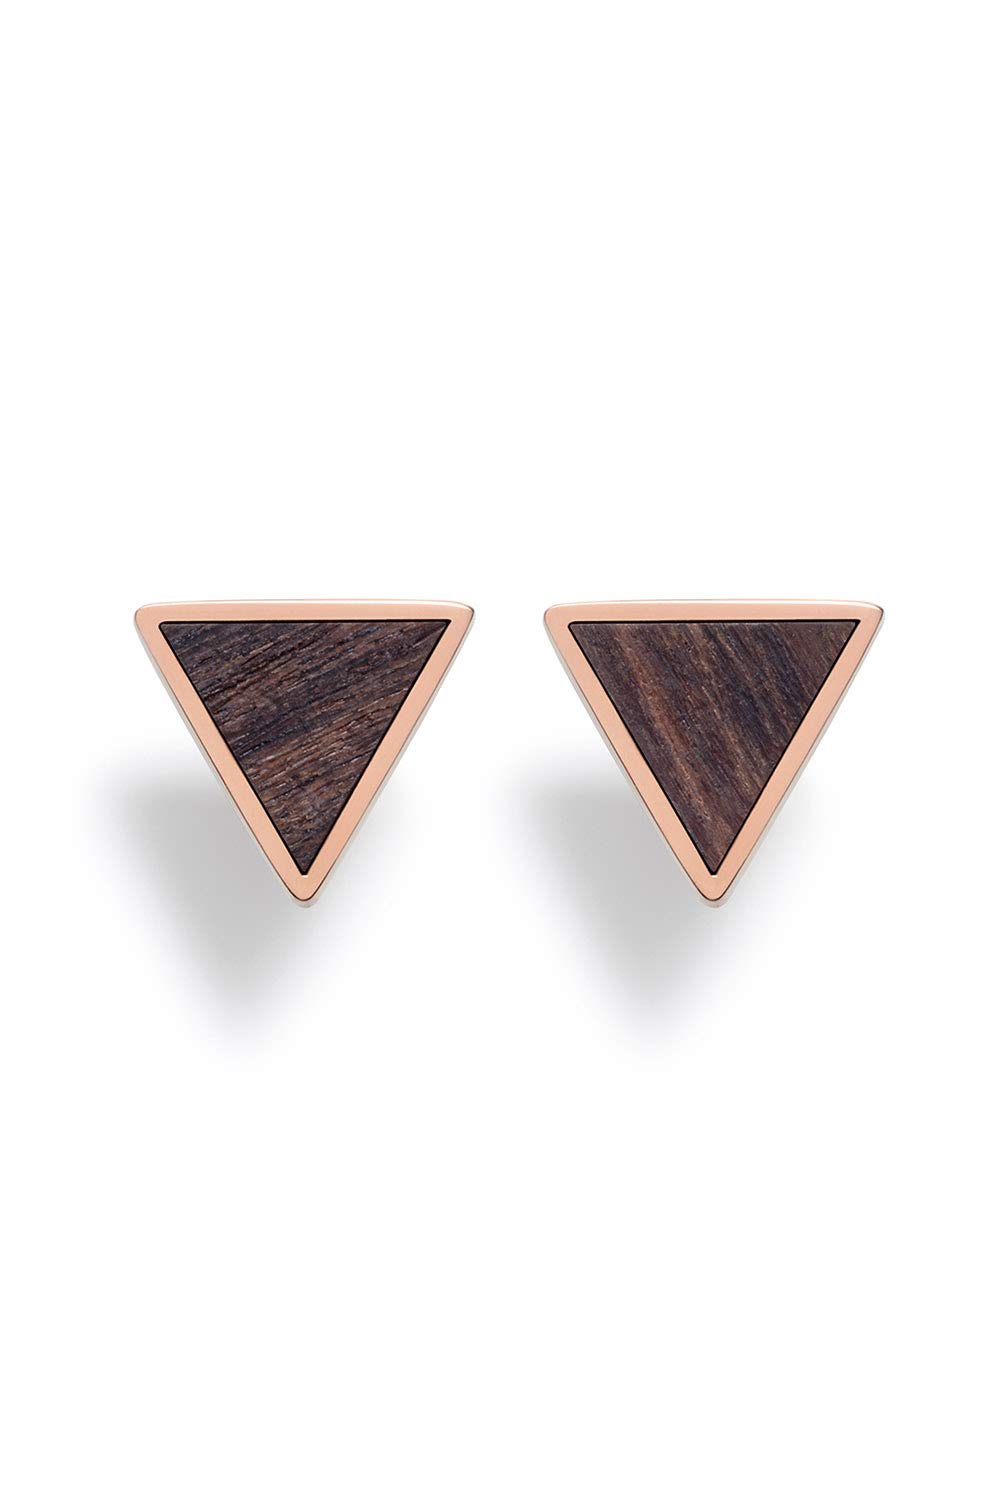 KERBHOLZ Holzschmuck – Geometrics Collection Triangle Earring, Damen Ohrring geometrisch, kleine Ohrstecker mit Dreieck aus Naturholz, roségold (8,5mm x 7,5mm)